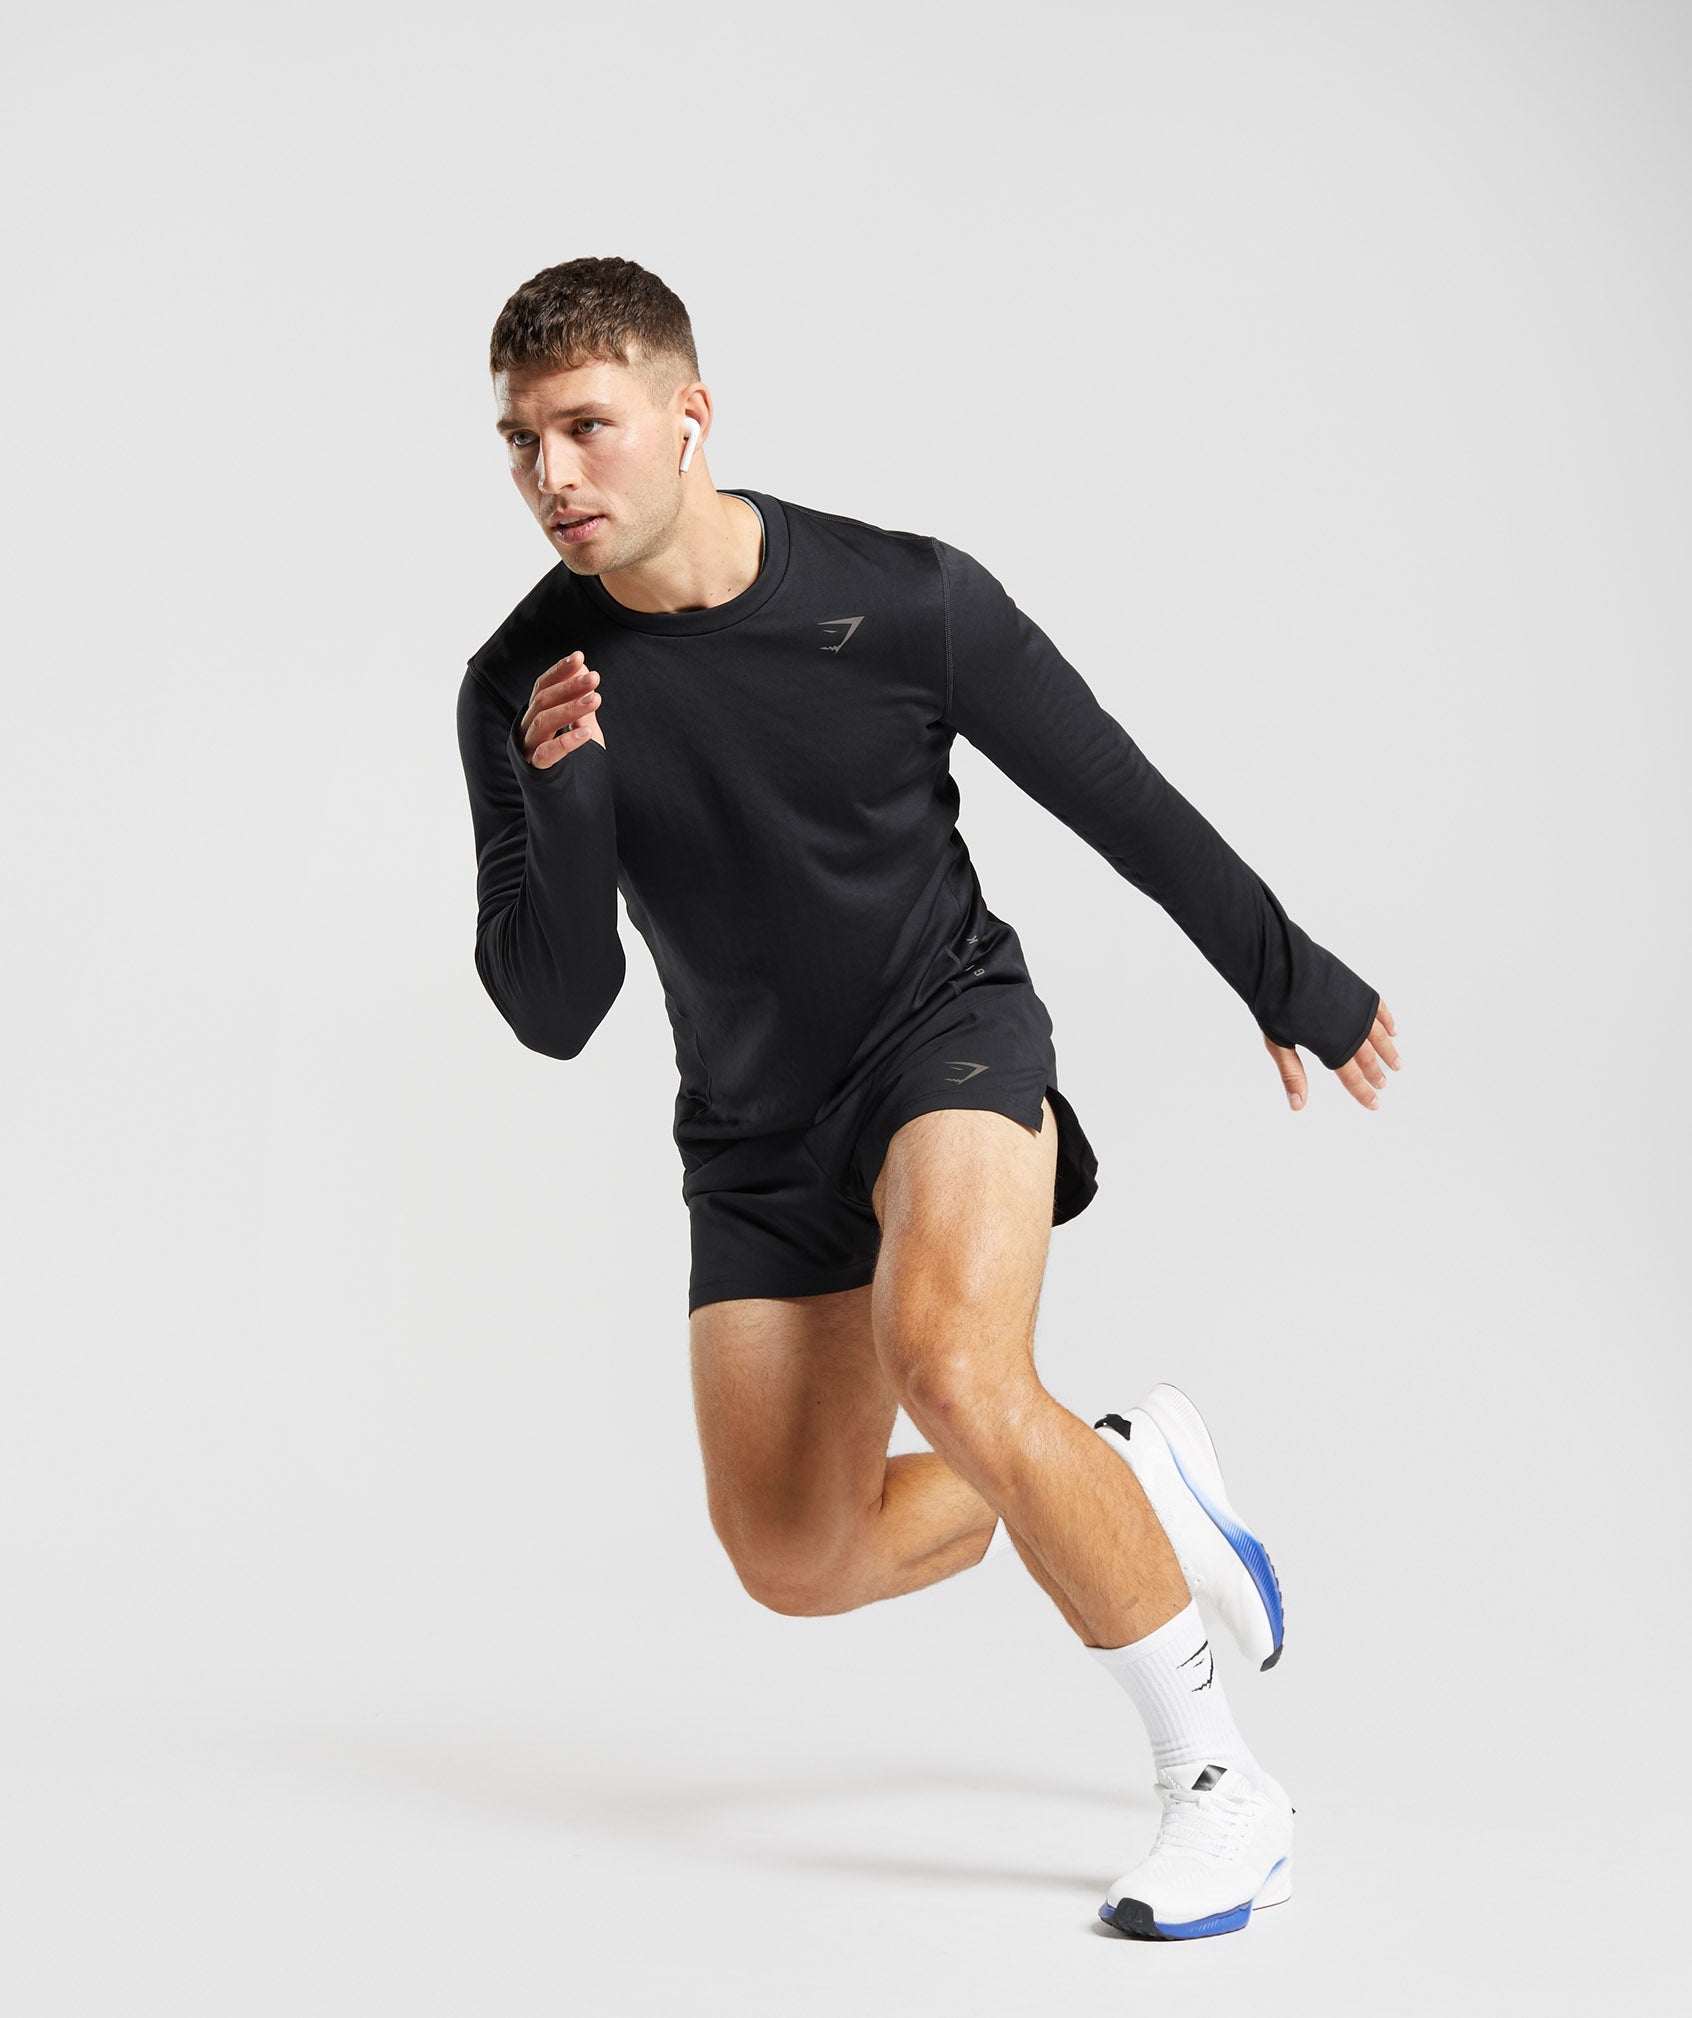 Men's running clothes & running apparel